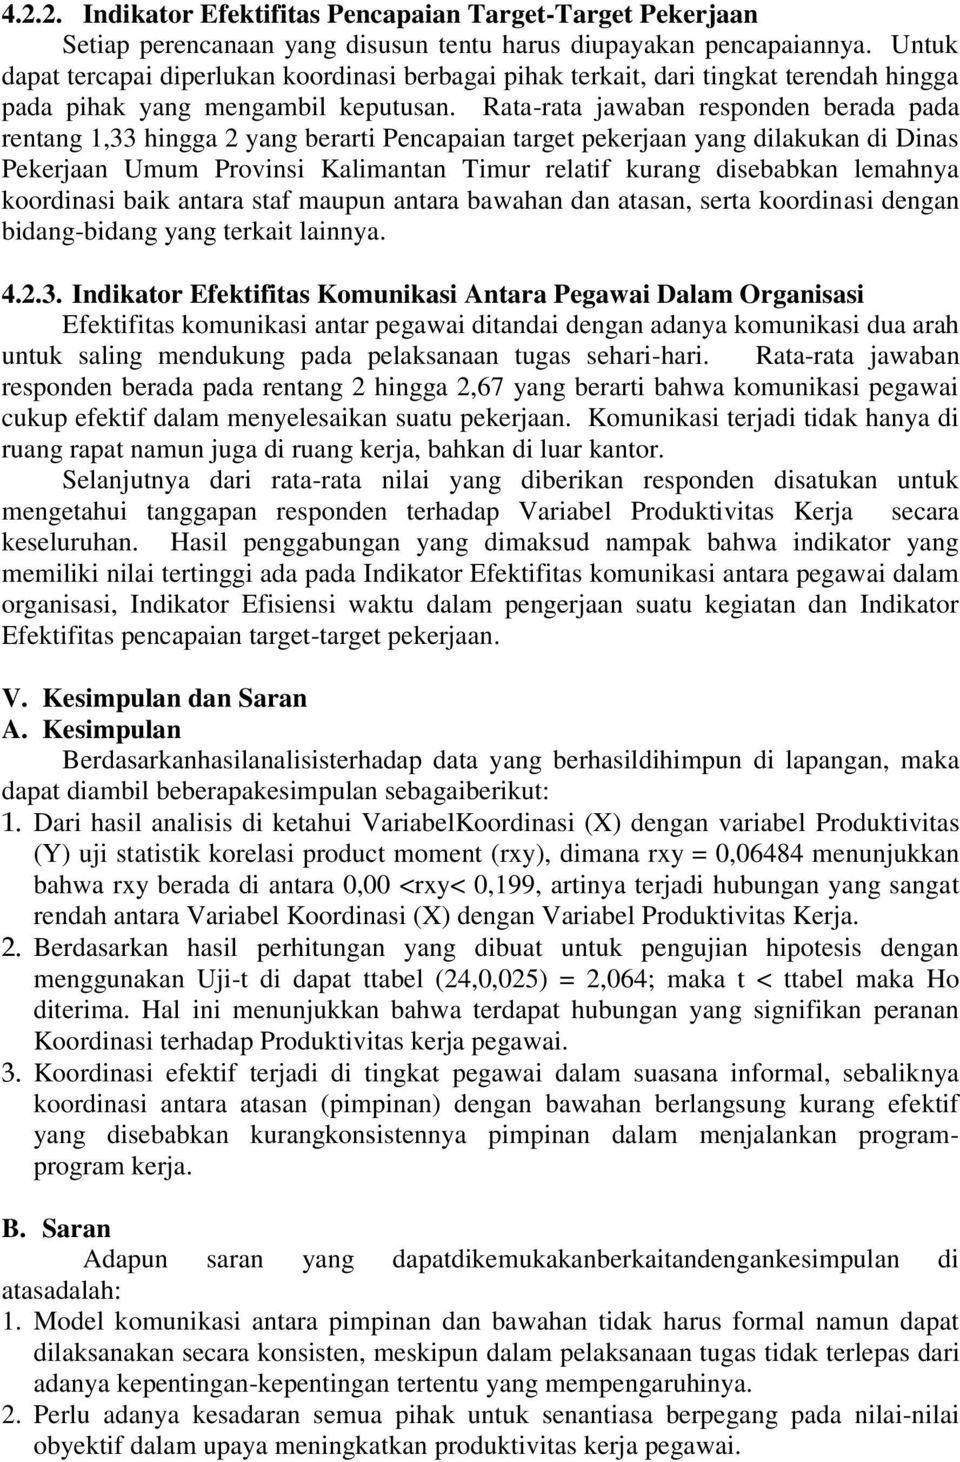 Rata-rata jawaban responden berada pada rentang 1,33 hingga 2 yang berarti Pencapaian target pekerjaan yang dilakukan di Dinas Pekerjaan Umum Provinsi Kalimantan Timur relatif kurang disebabkan